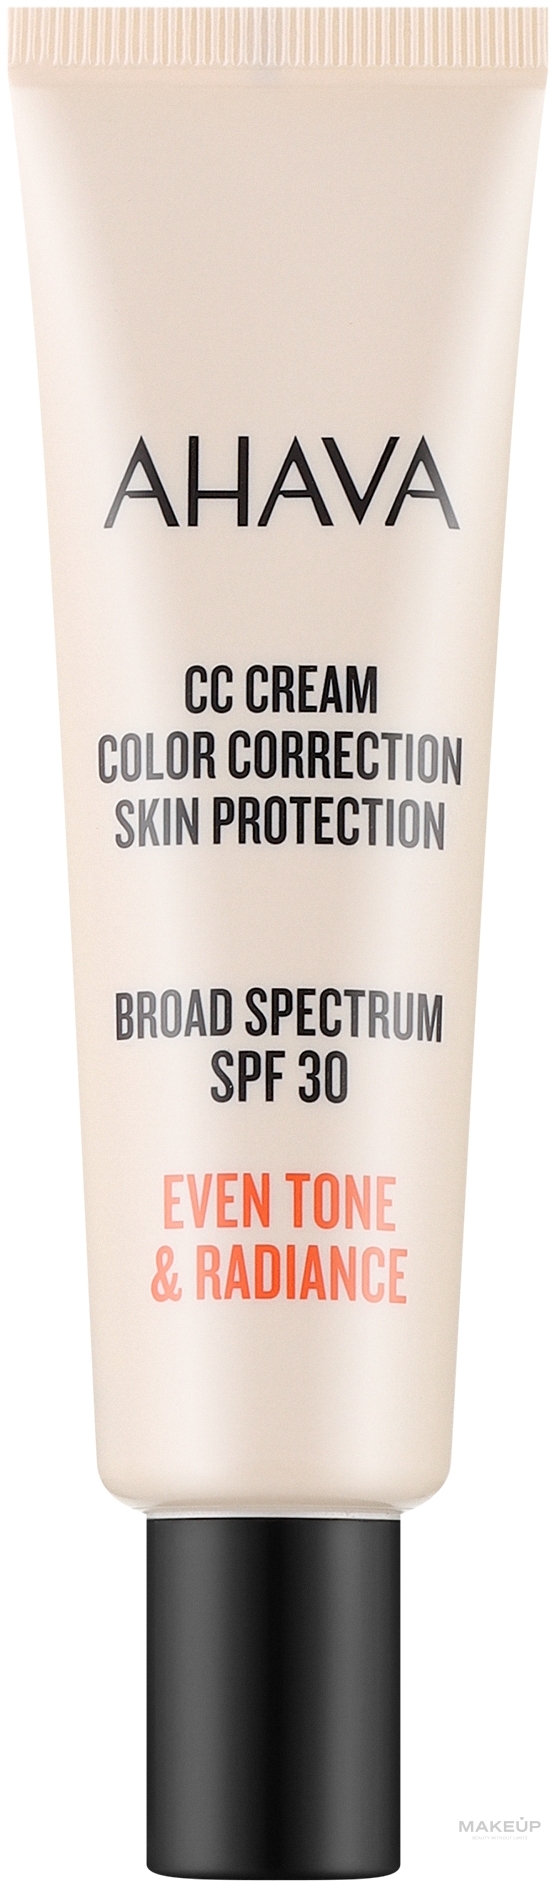 Krem CC korekcyjny do twarzy - Ahava CC Cream Color Correction Skin Protection SPF 30 — Zdjęcie 30 ml